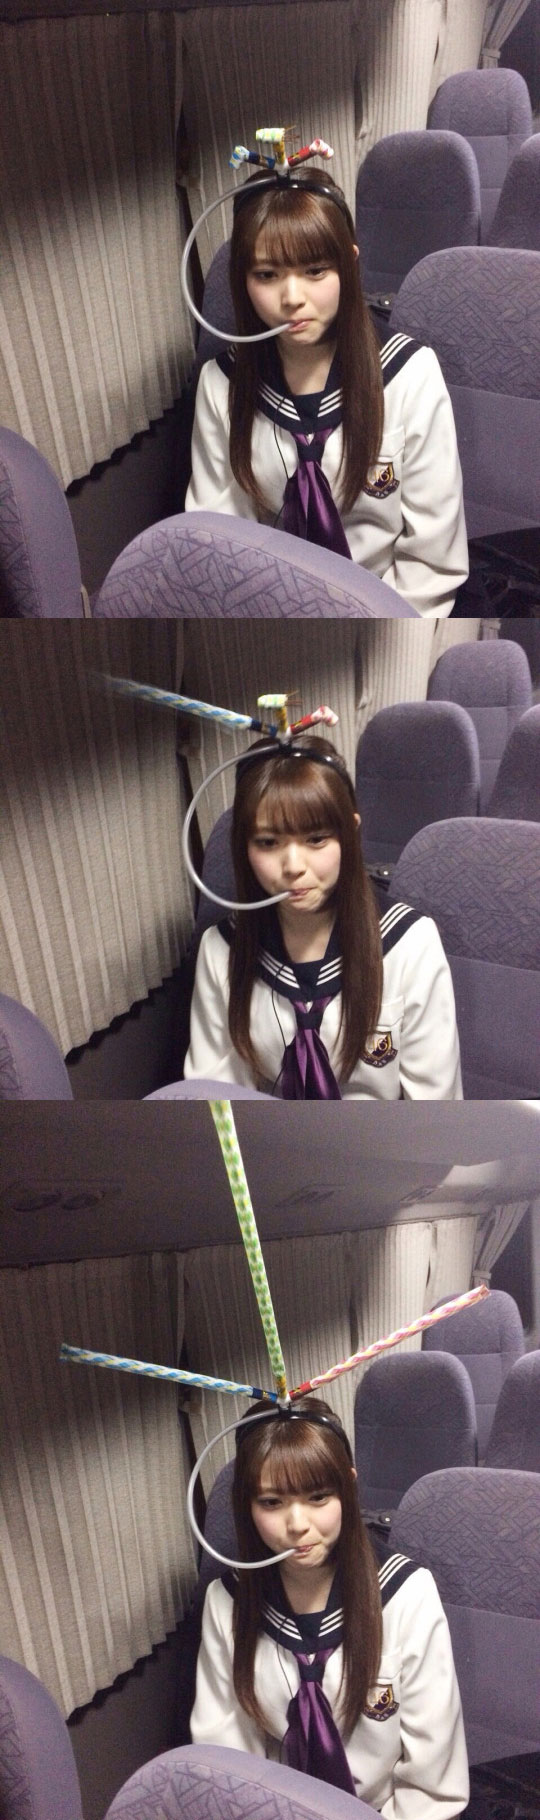 funny-Japanese-school-girl-invention-whistle-helmet